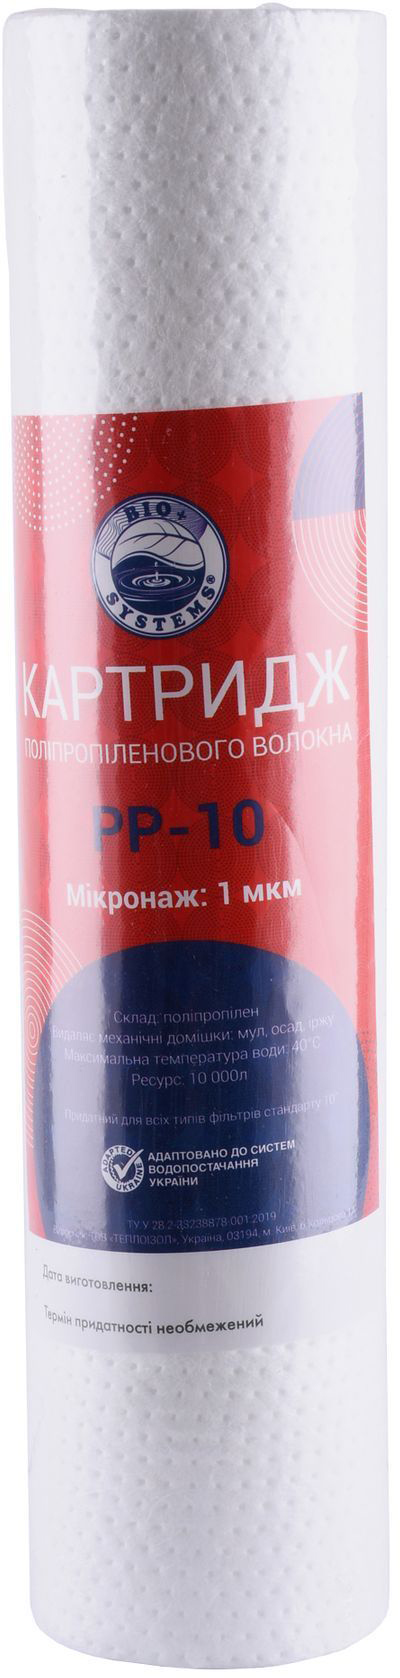 Купить картридж bio systems для холодной воды BIO Systems PP-10 (1 мкм) в Киеве